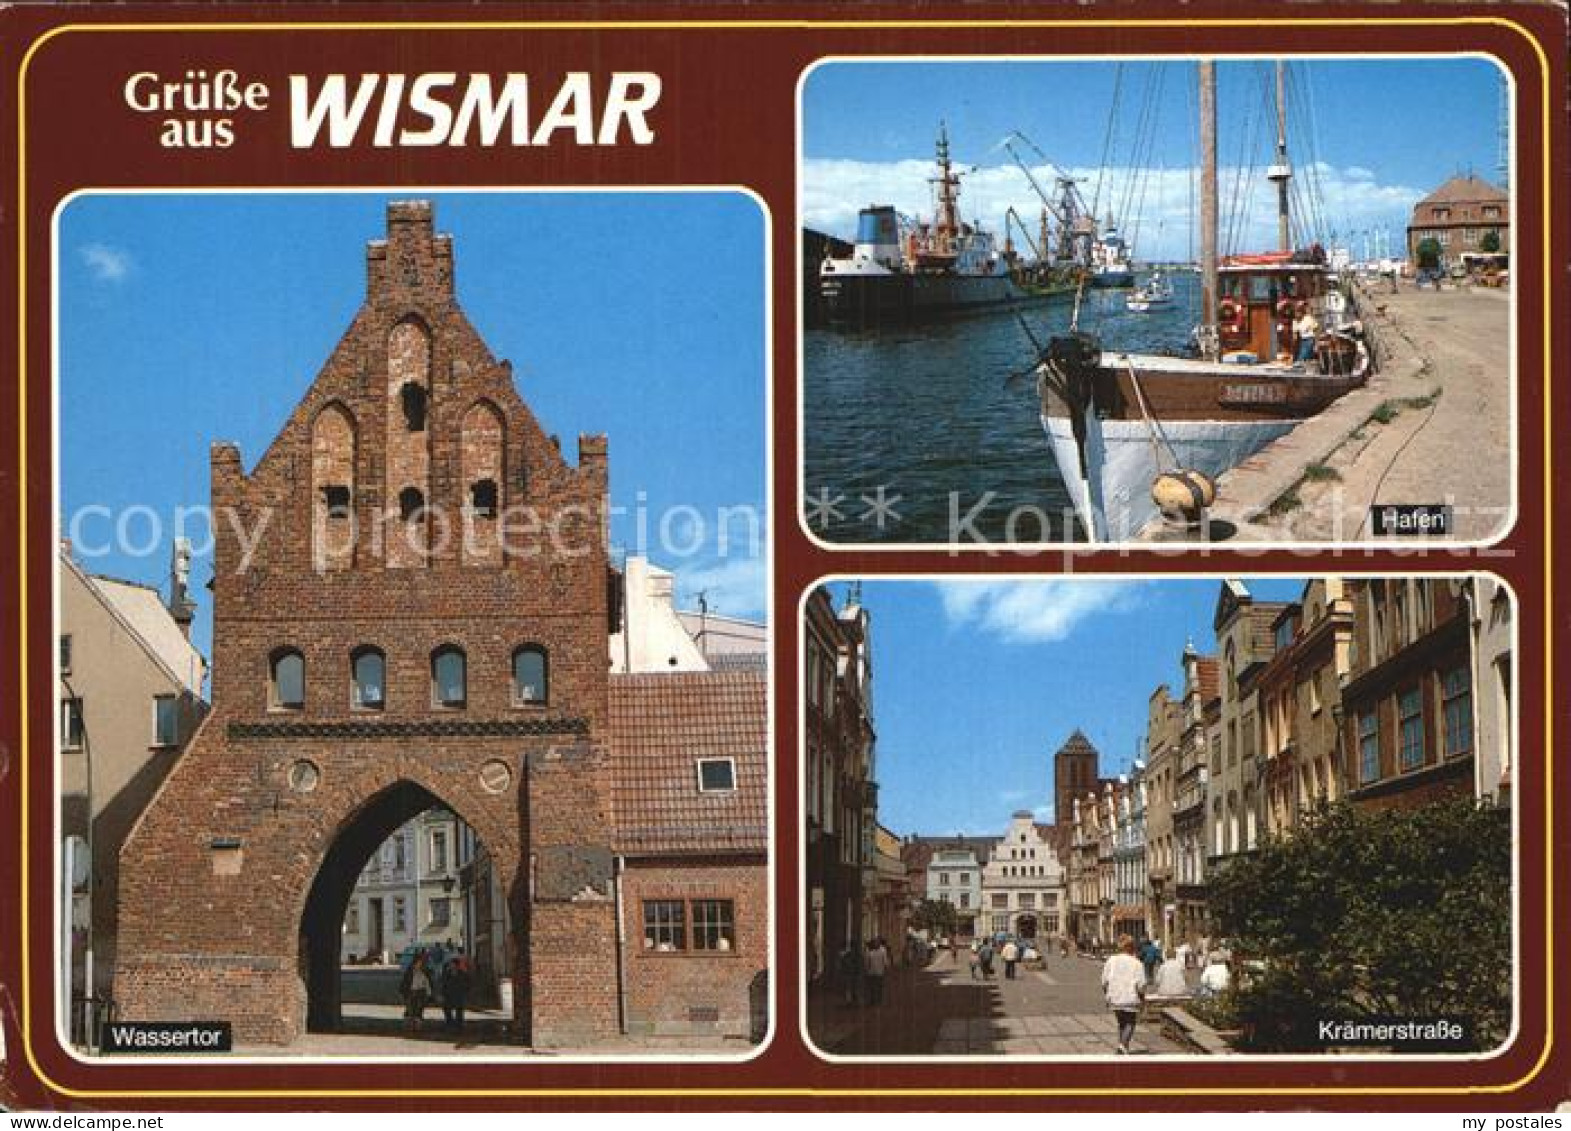 72585737 Wismar Mecklenburg Hafen Kraemerstrasse Wassertor Wismar - Wismar